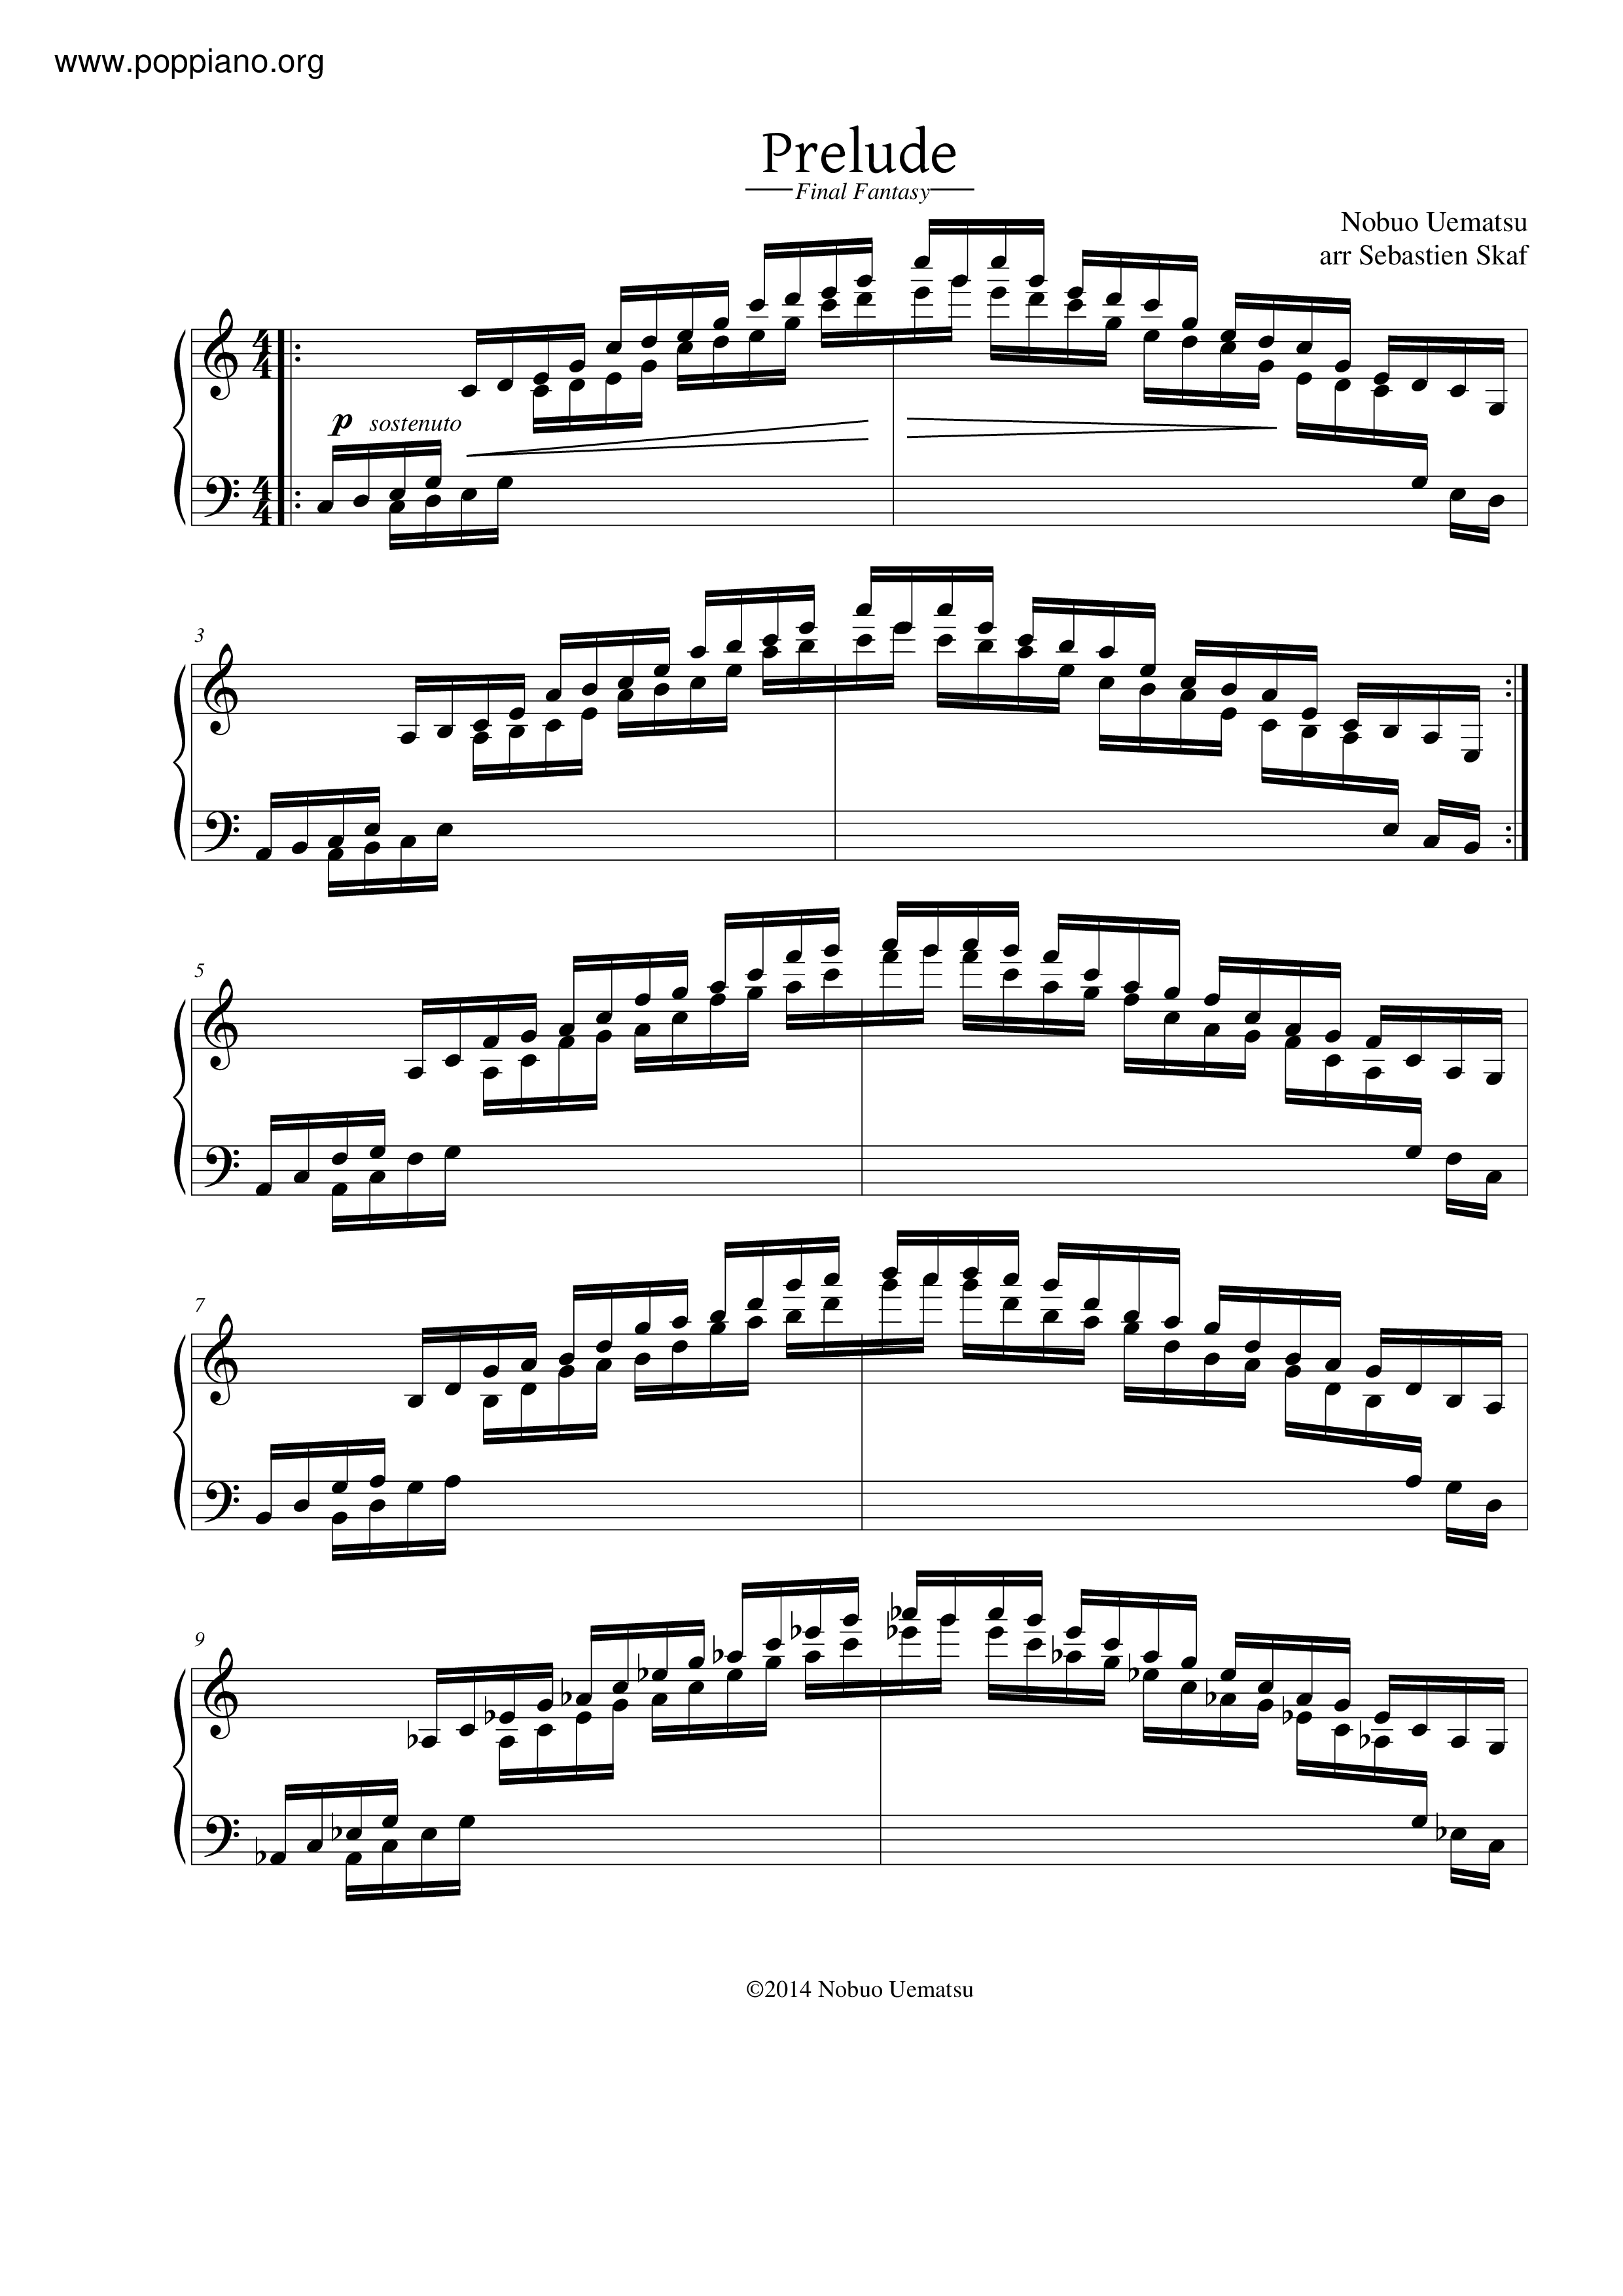 ファイナルファンタジー12 ピアノ楽譜 - 楽譜/スコア